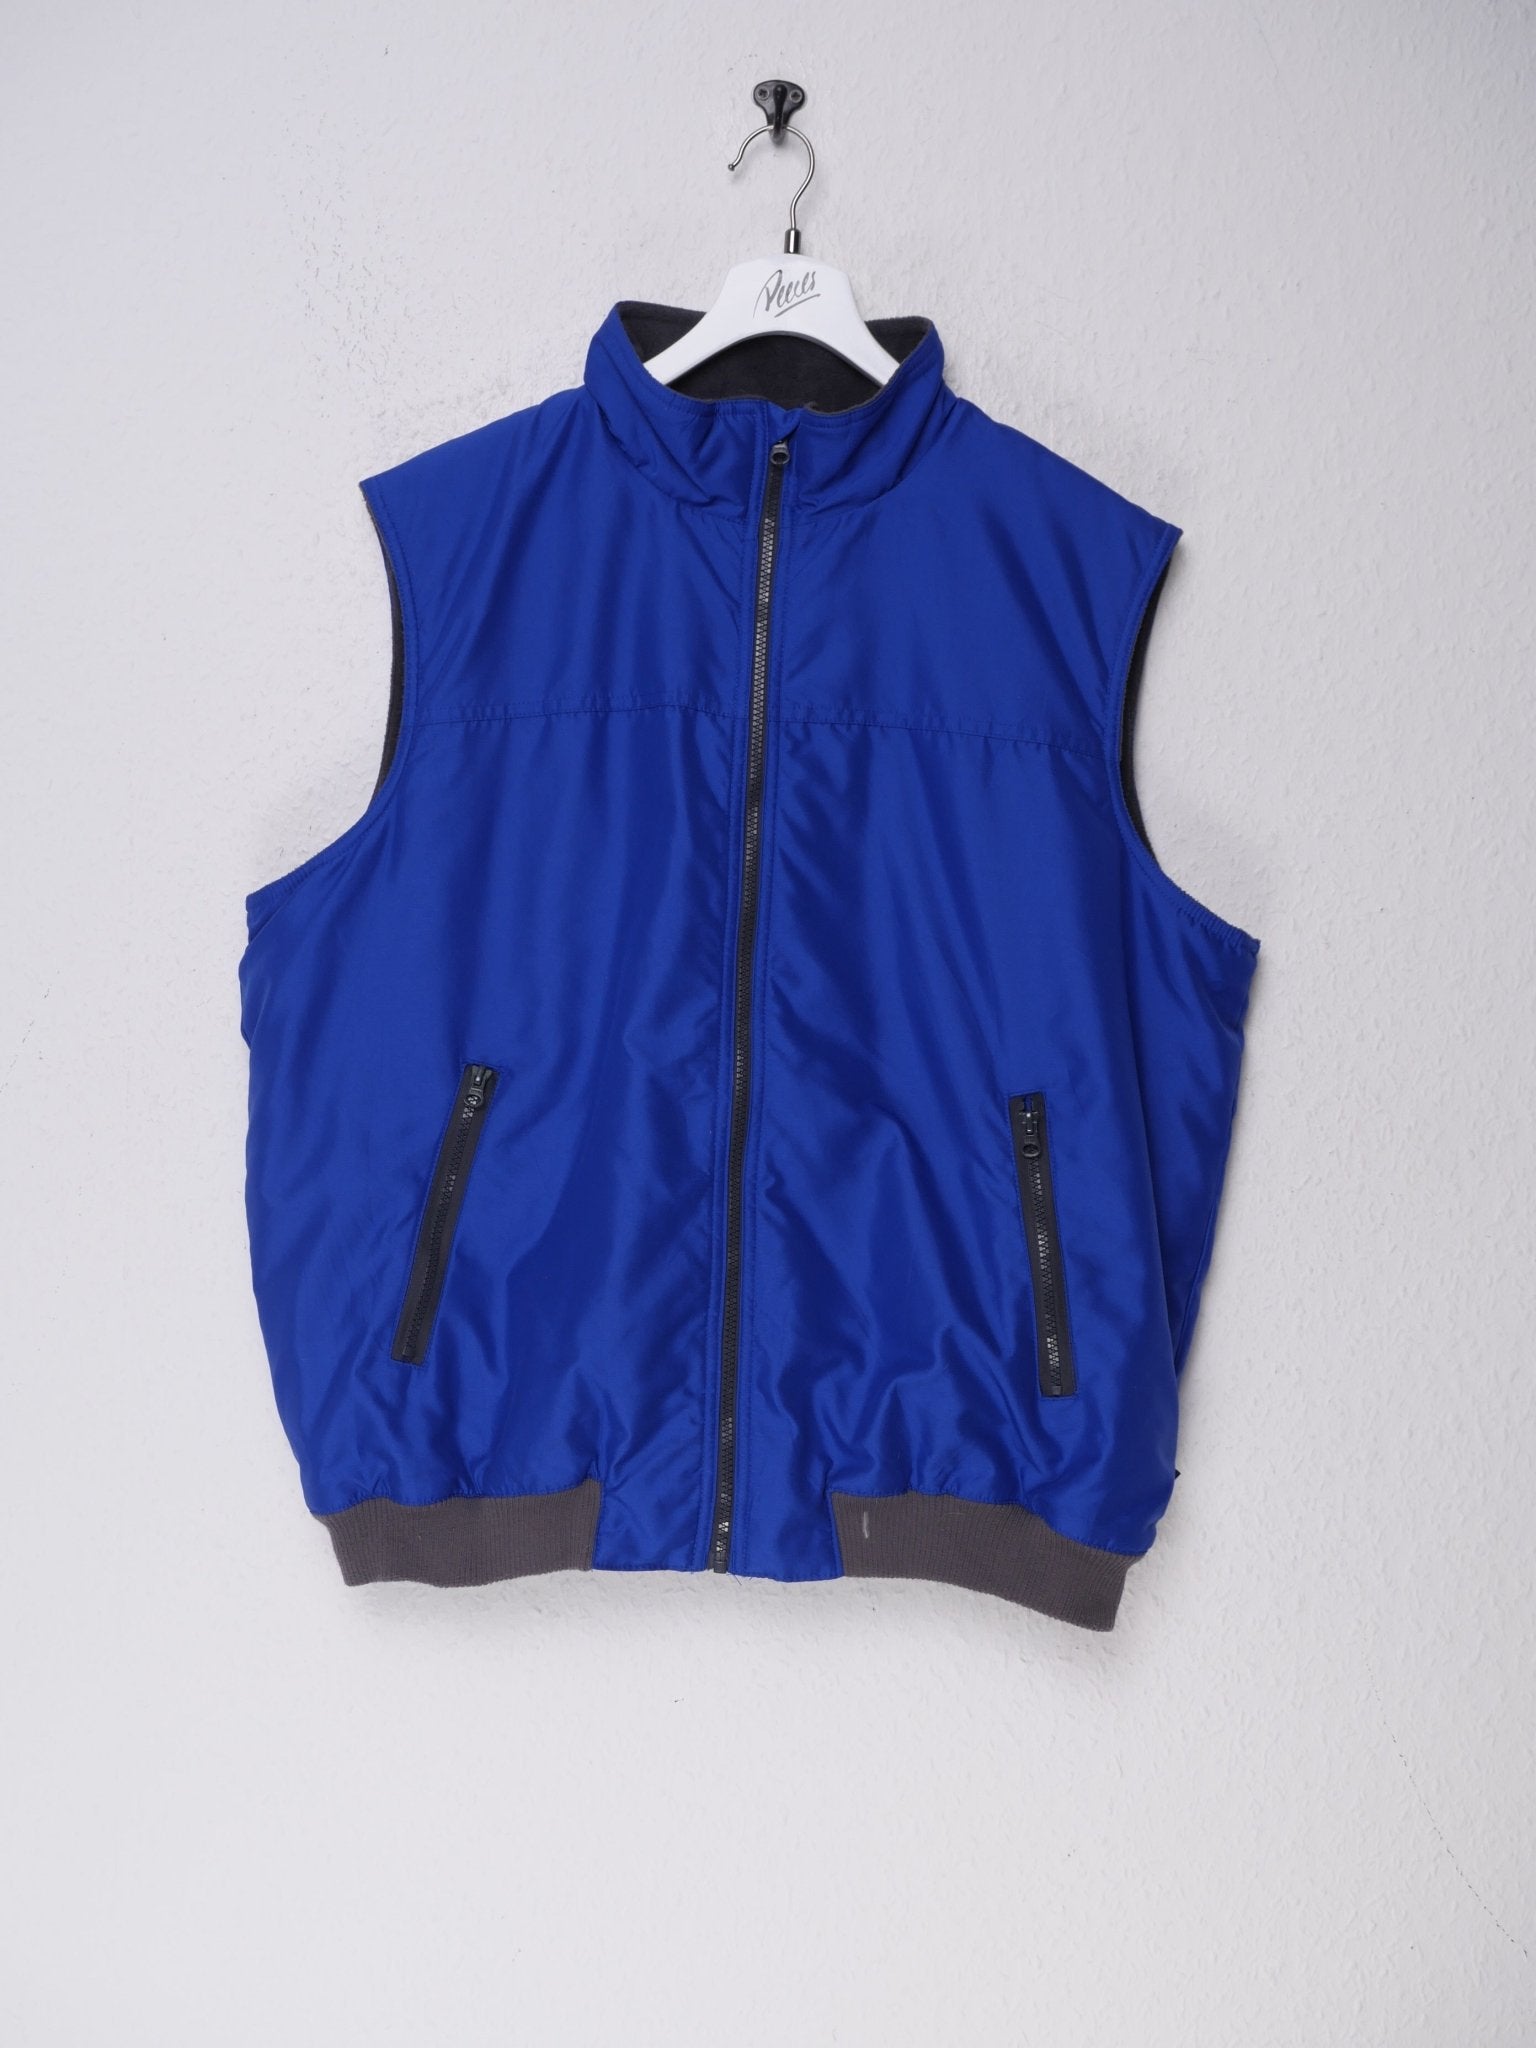 Chaps basic plain blue Vest Jacket - Peeces